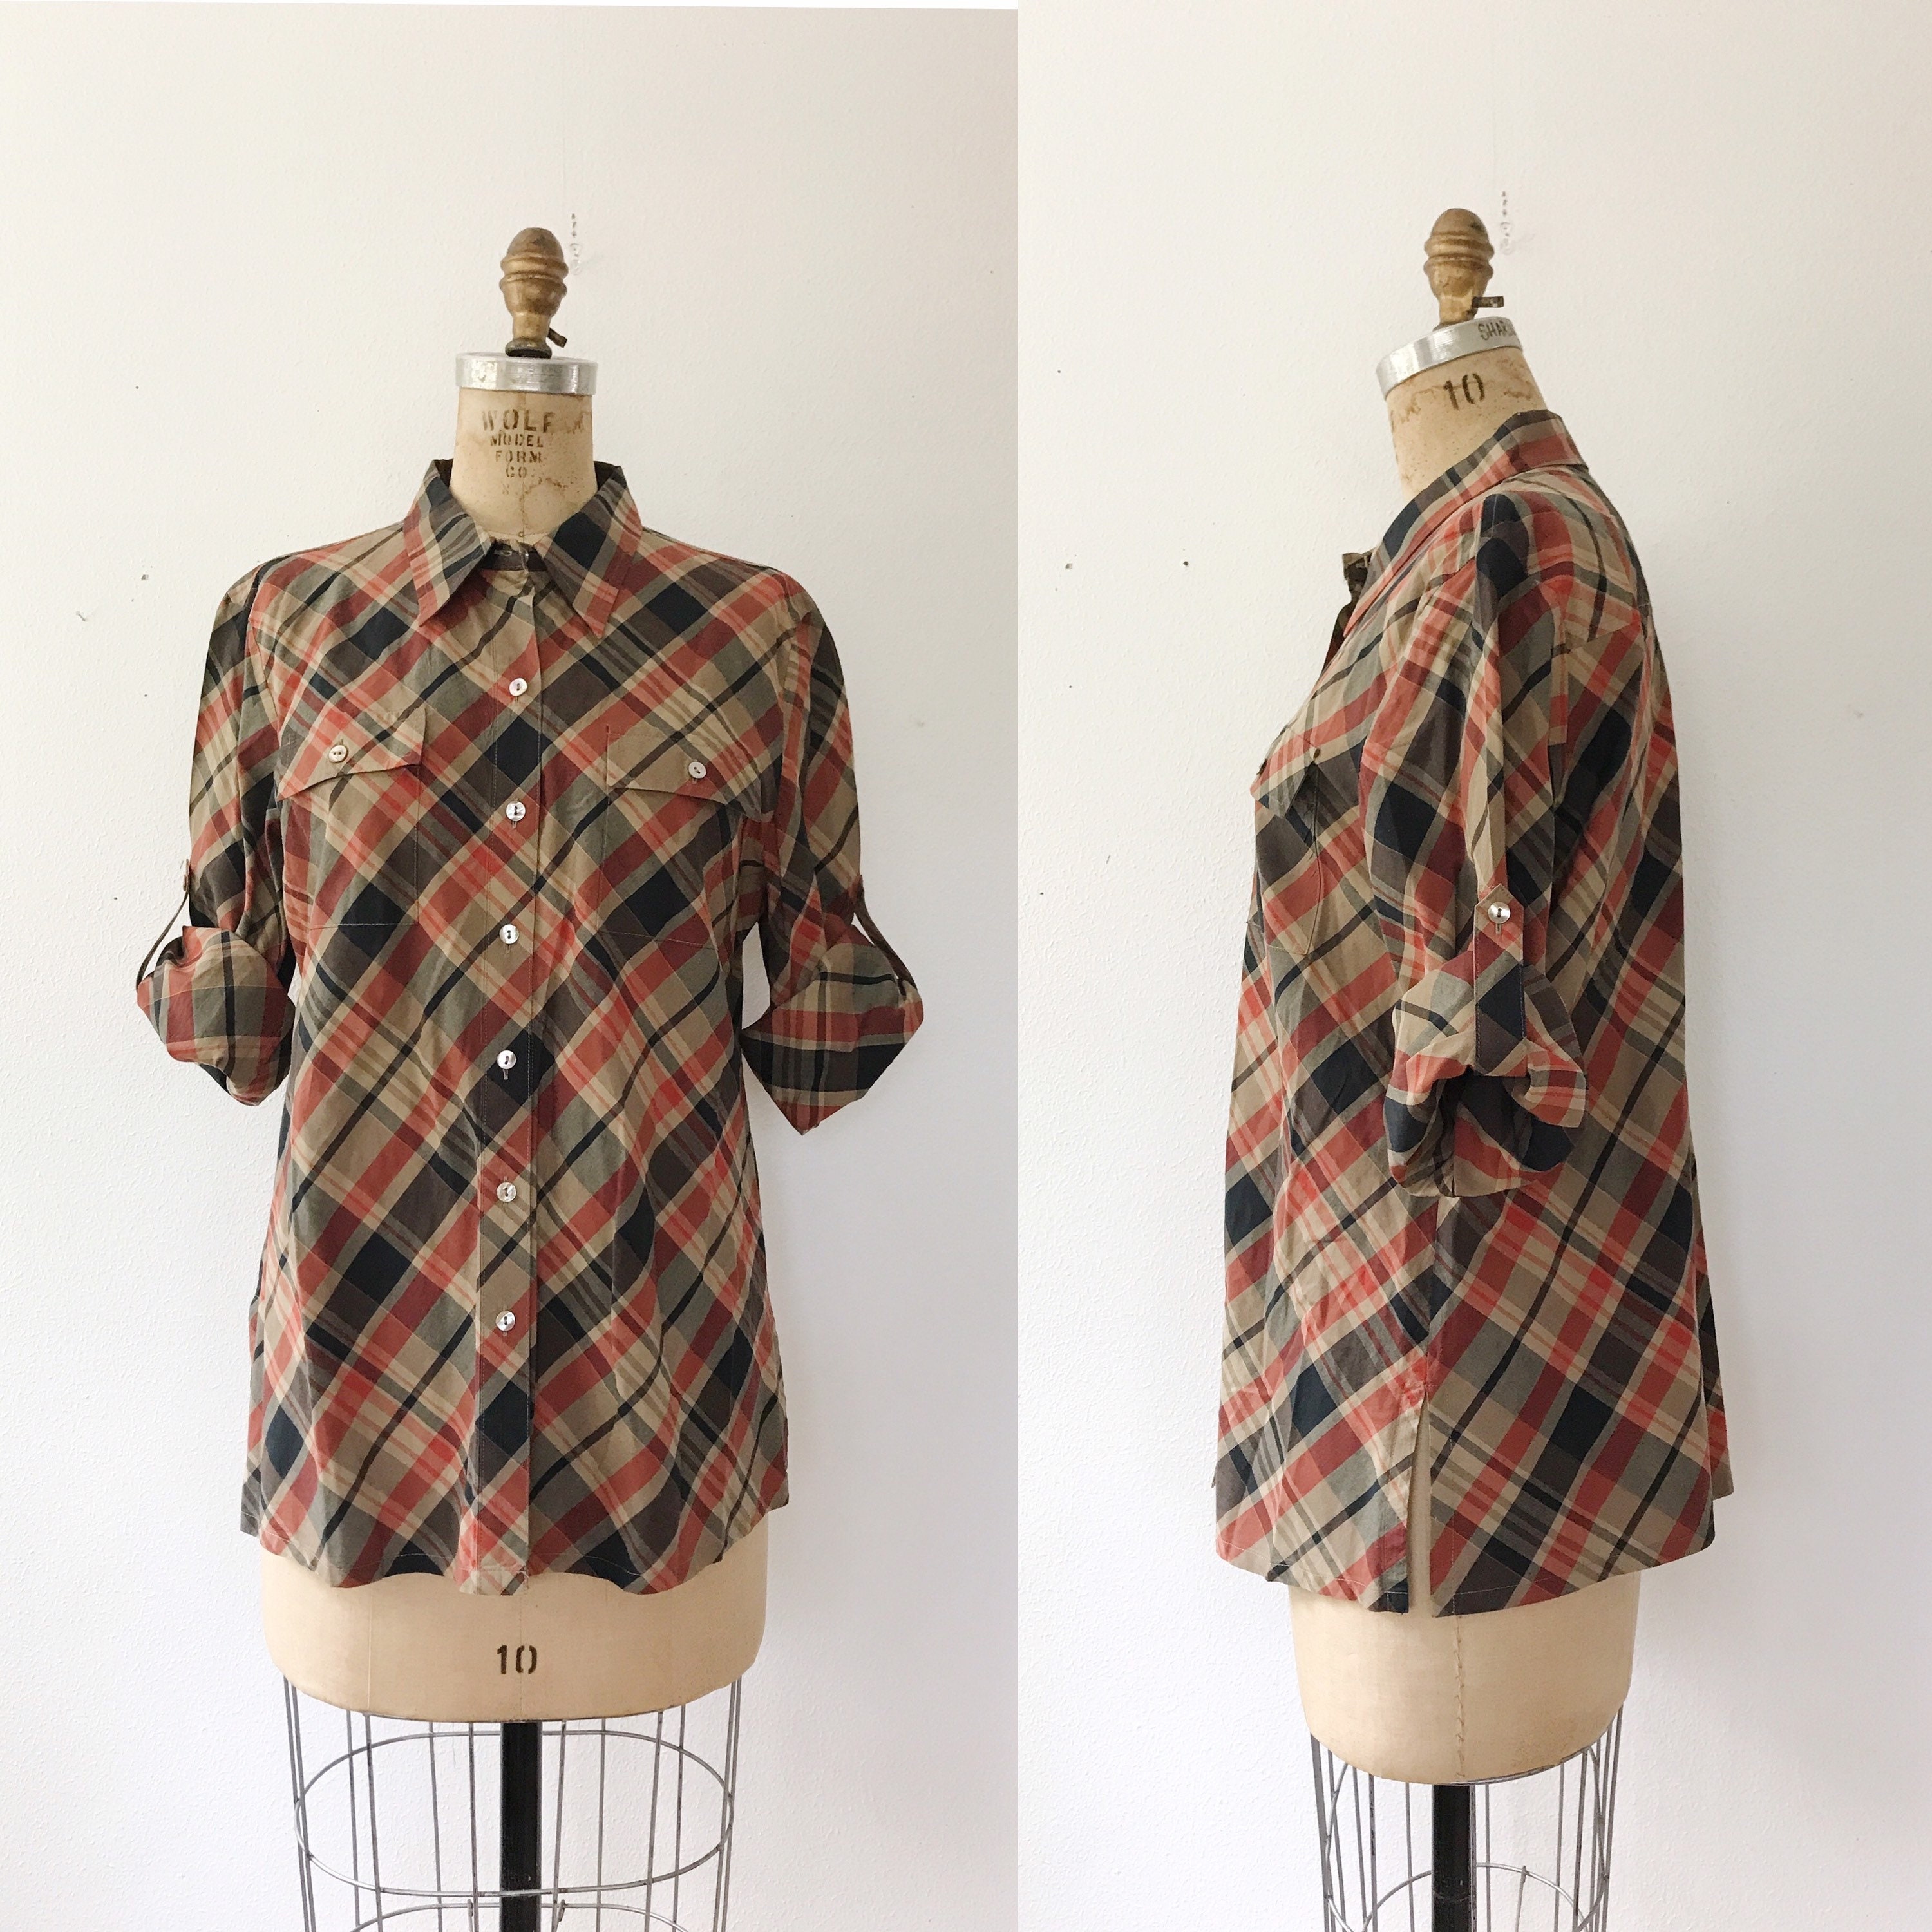 Autumn plaid blouse / 90s blouse / vintage cotton blouse